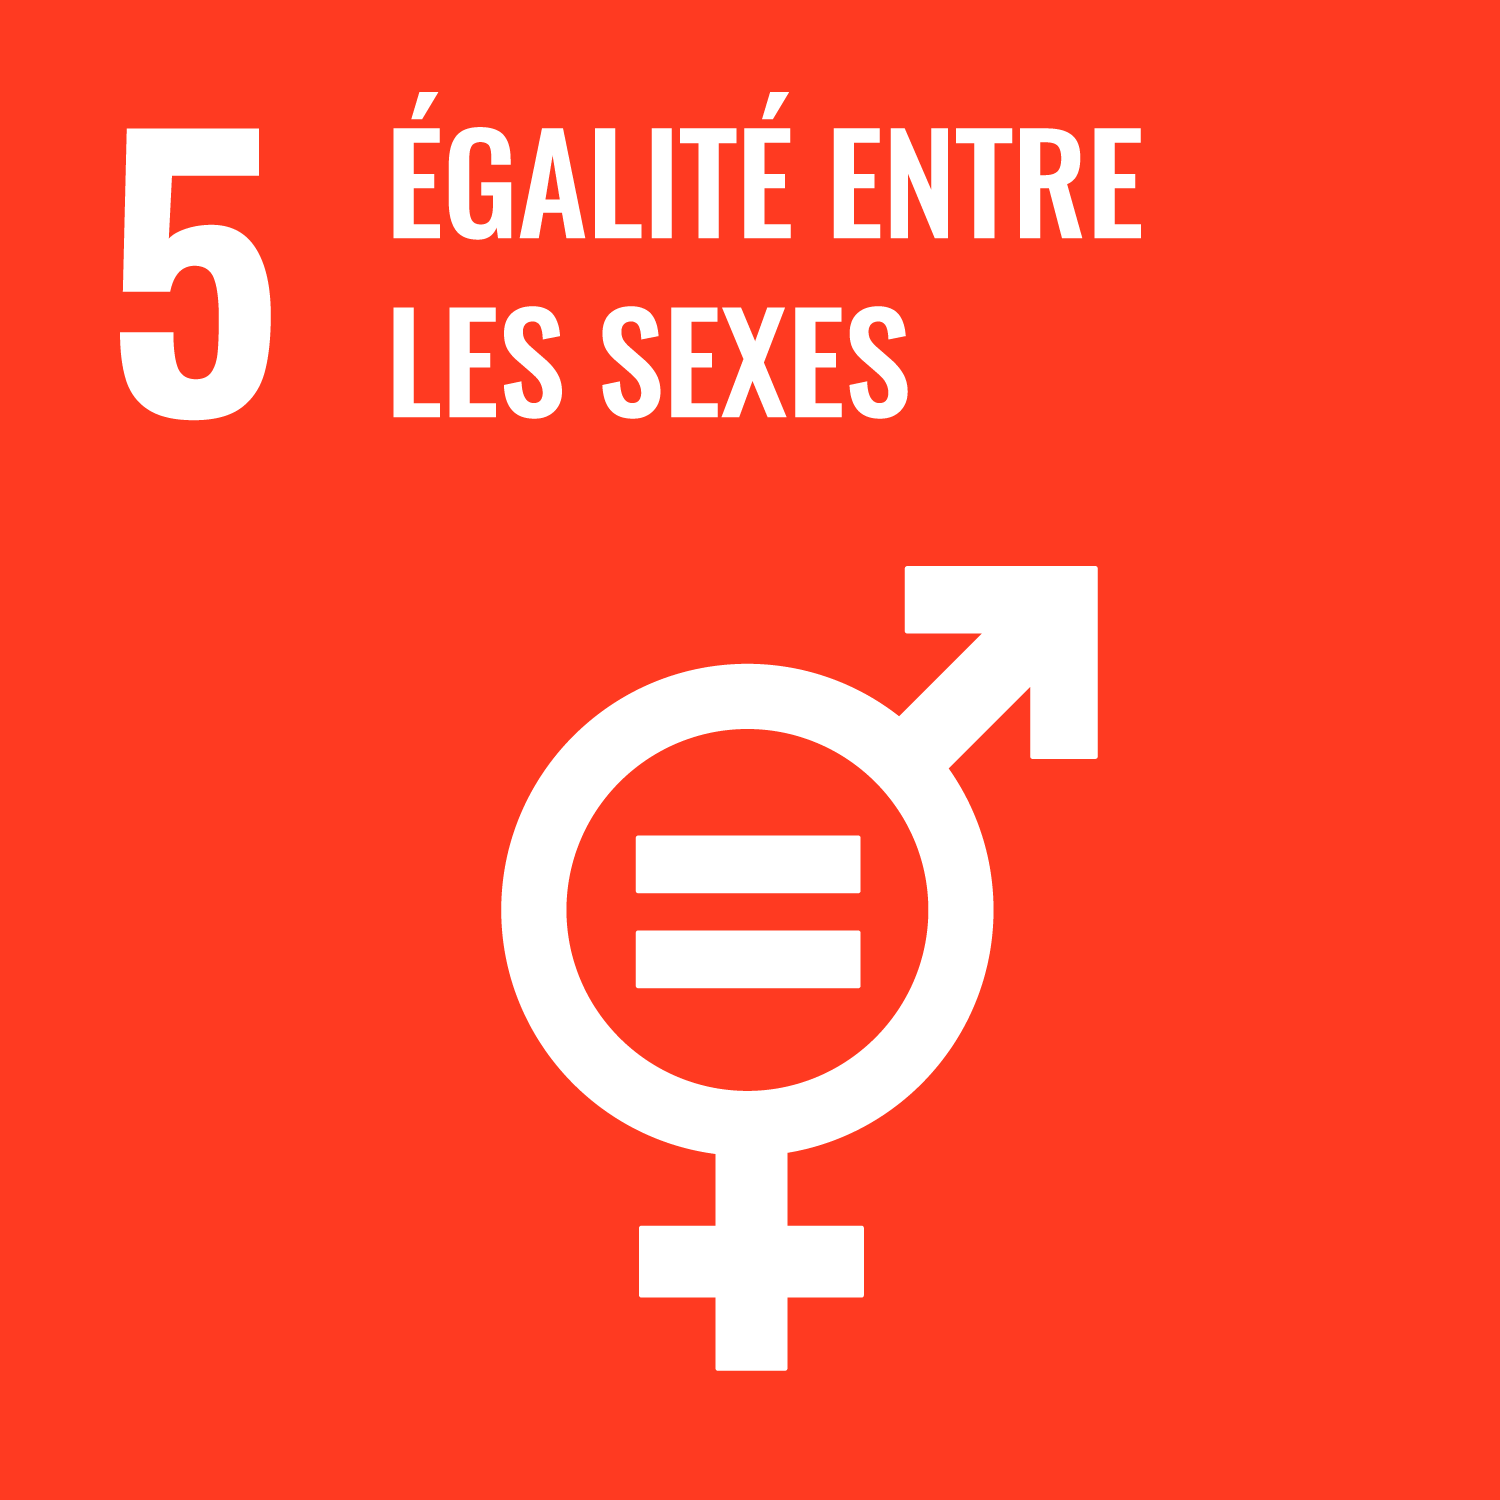 Objectif de Développement Durable de l'O.N.U. 5 : égalité entre les sexes